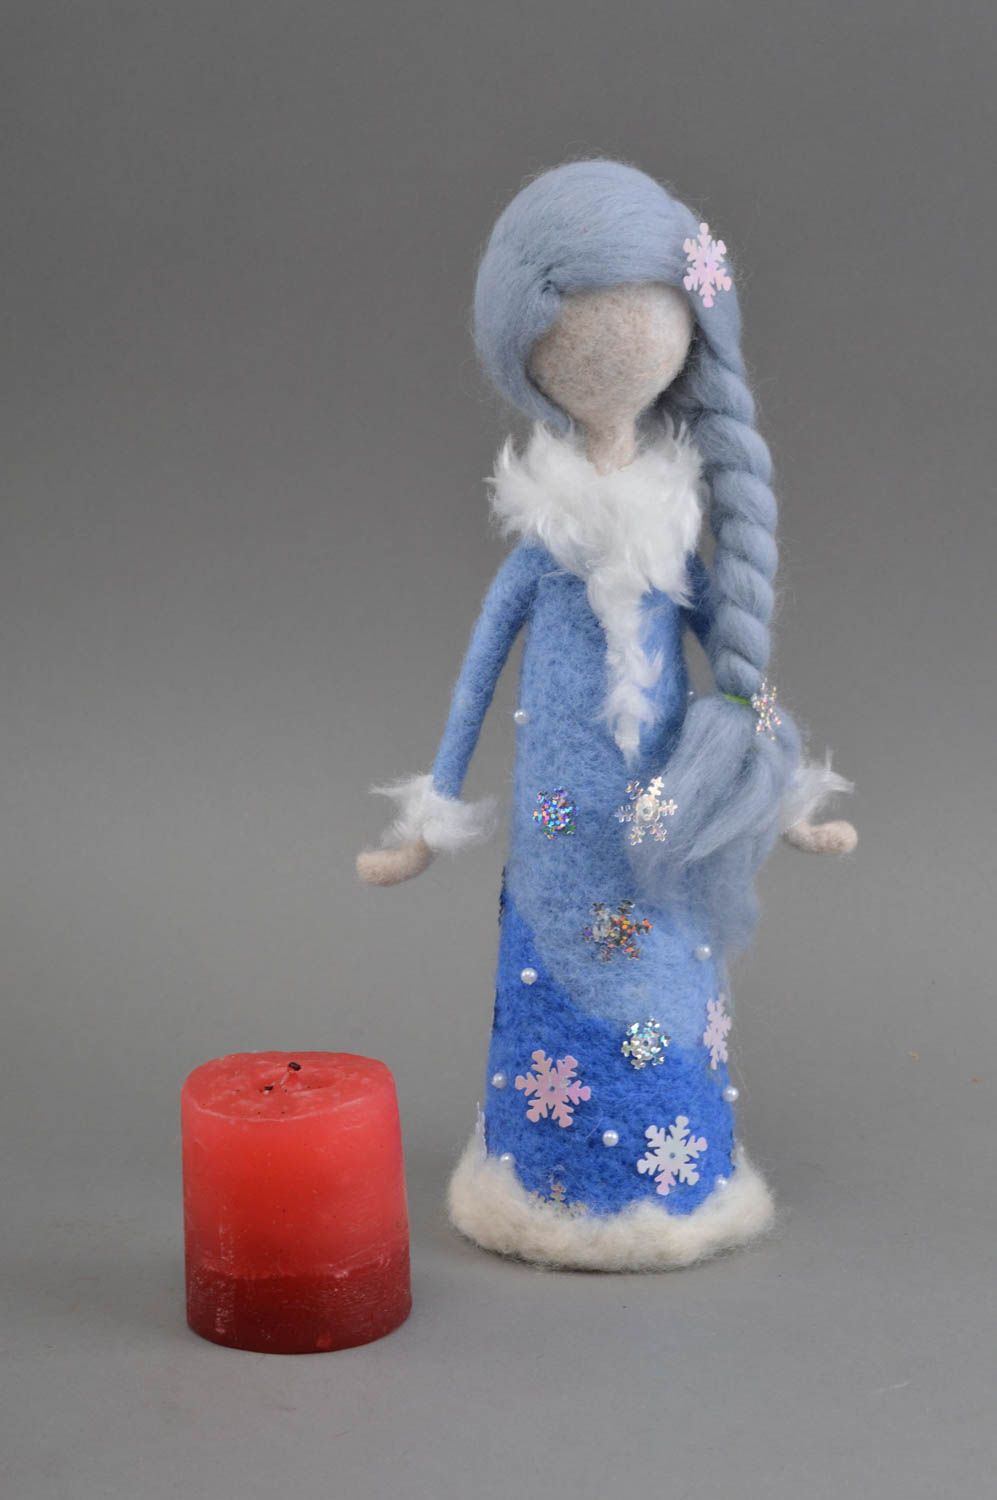 Decorative woolen toy designer handmade felted figurine stylish interior doll photo 1